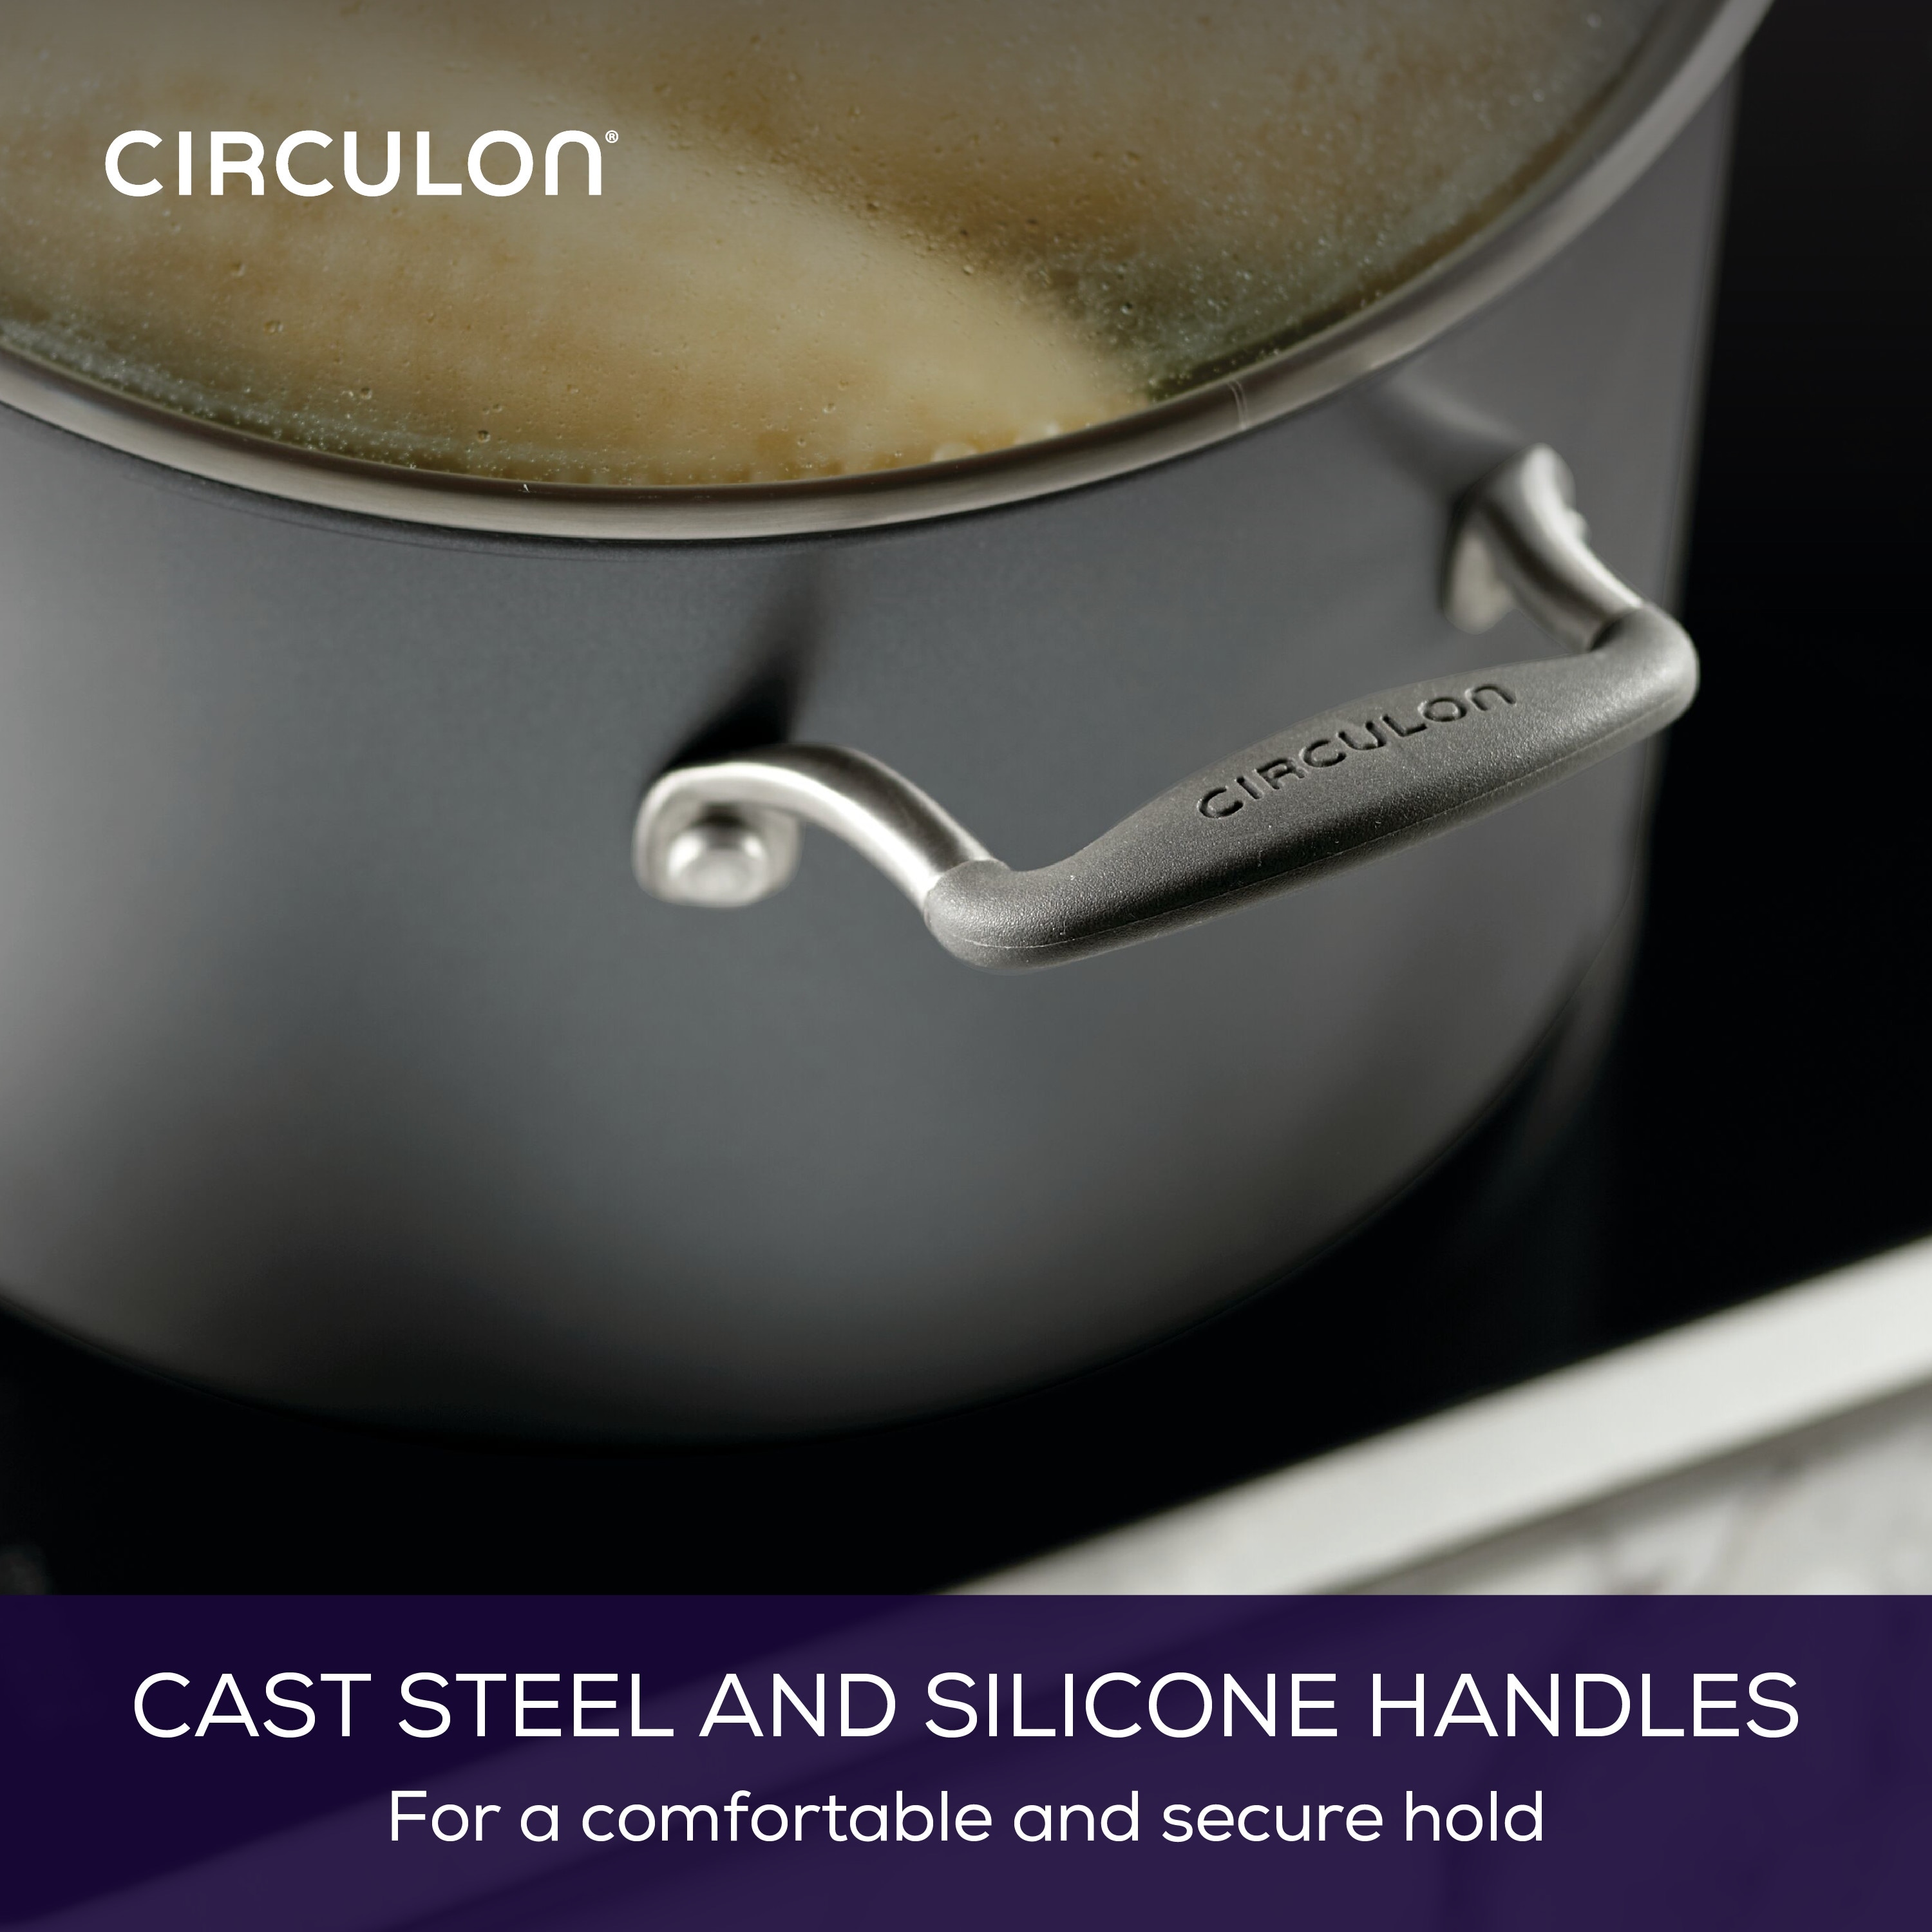 Circulon ScratchDefense Technology is a nonstick cookware game changer